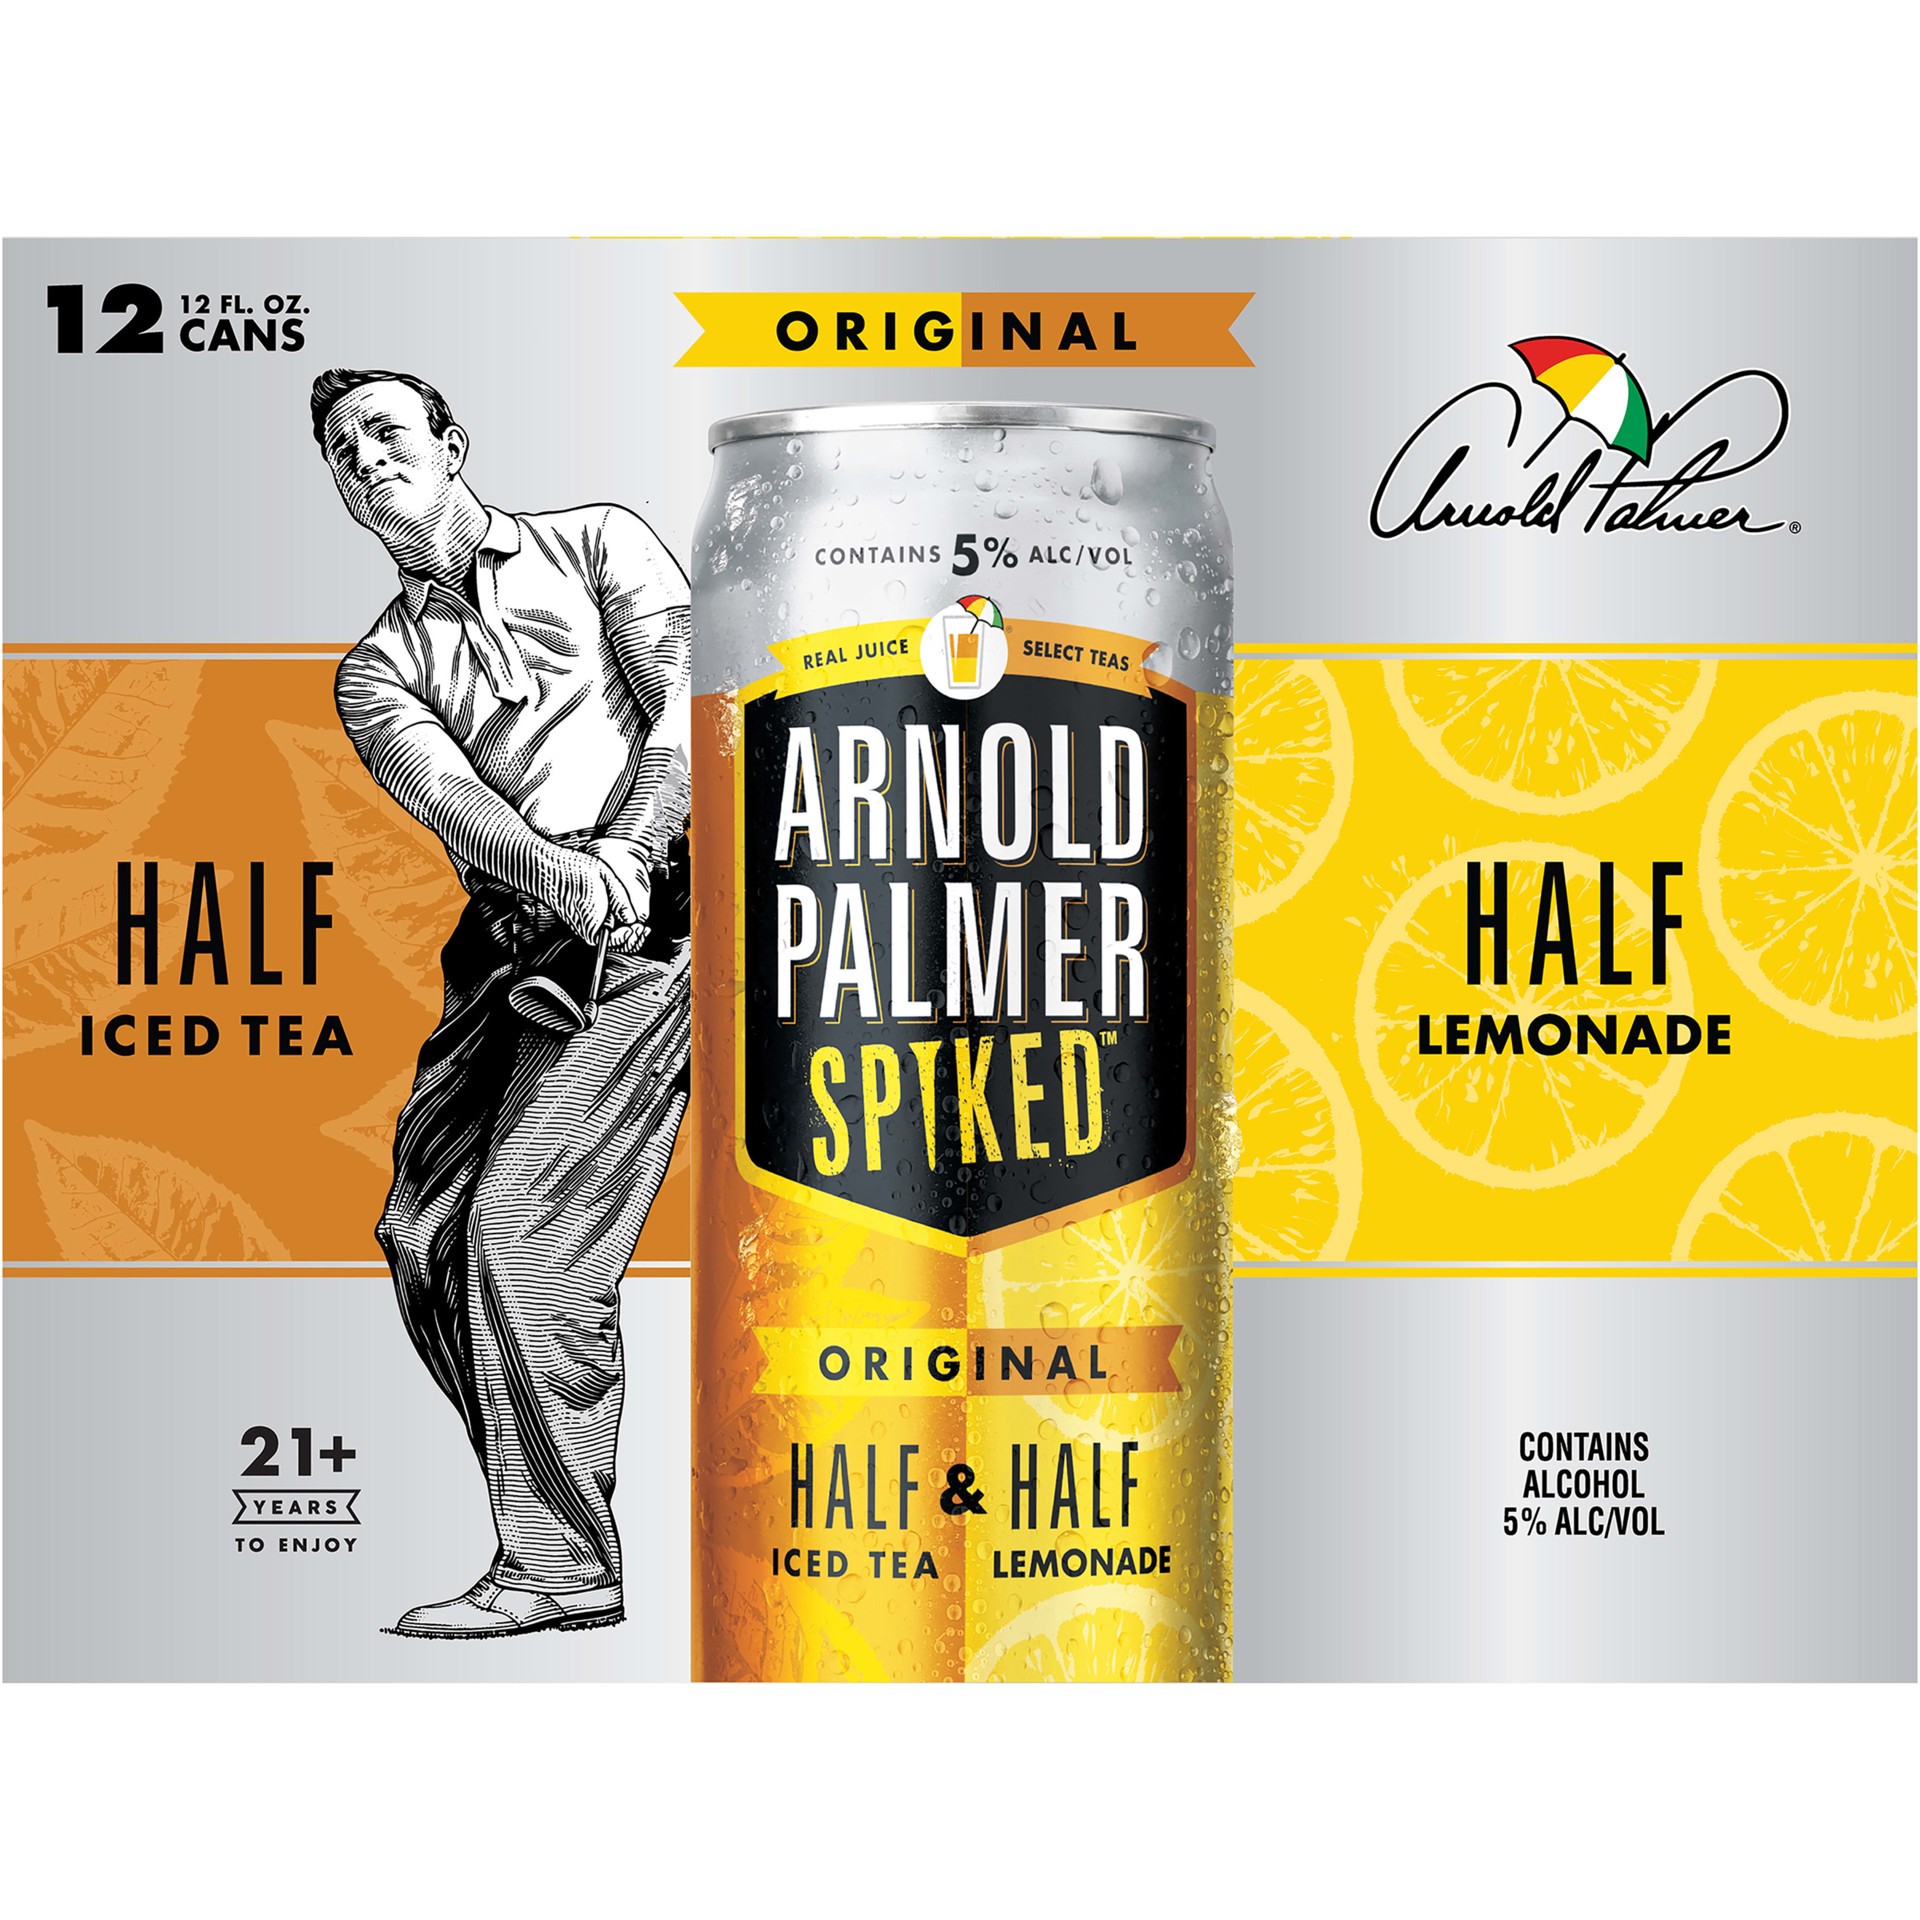 slide 5 of 5, Arnold Palmer Spiked Half & Half Original Arnold Palmer Spiked Original Half & Half Iced Tea Lemonade, 12 Pack, 12 fl oz Cans, 5% ABV, 144 fl oz